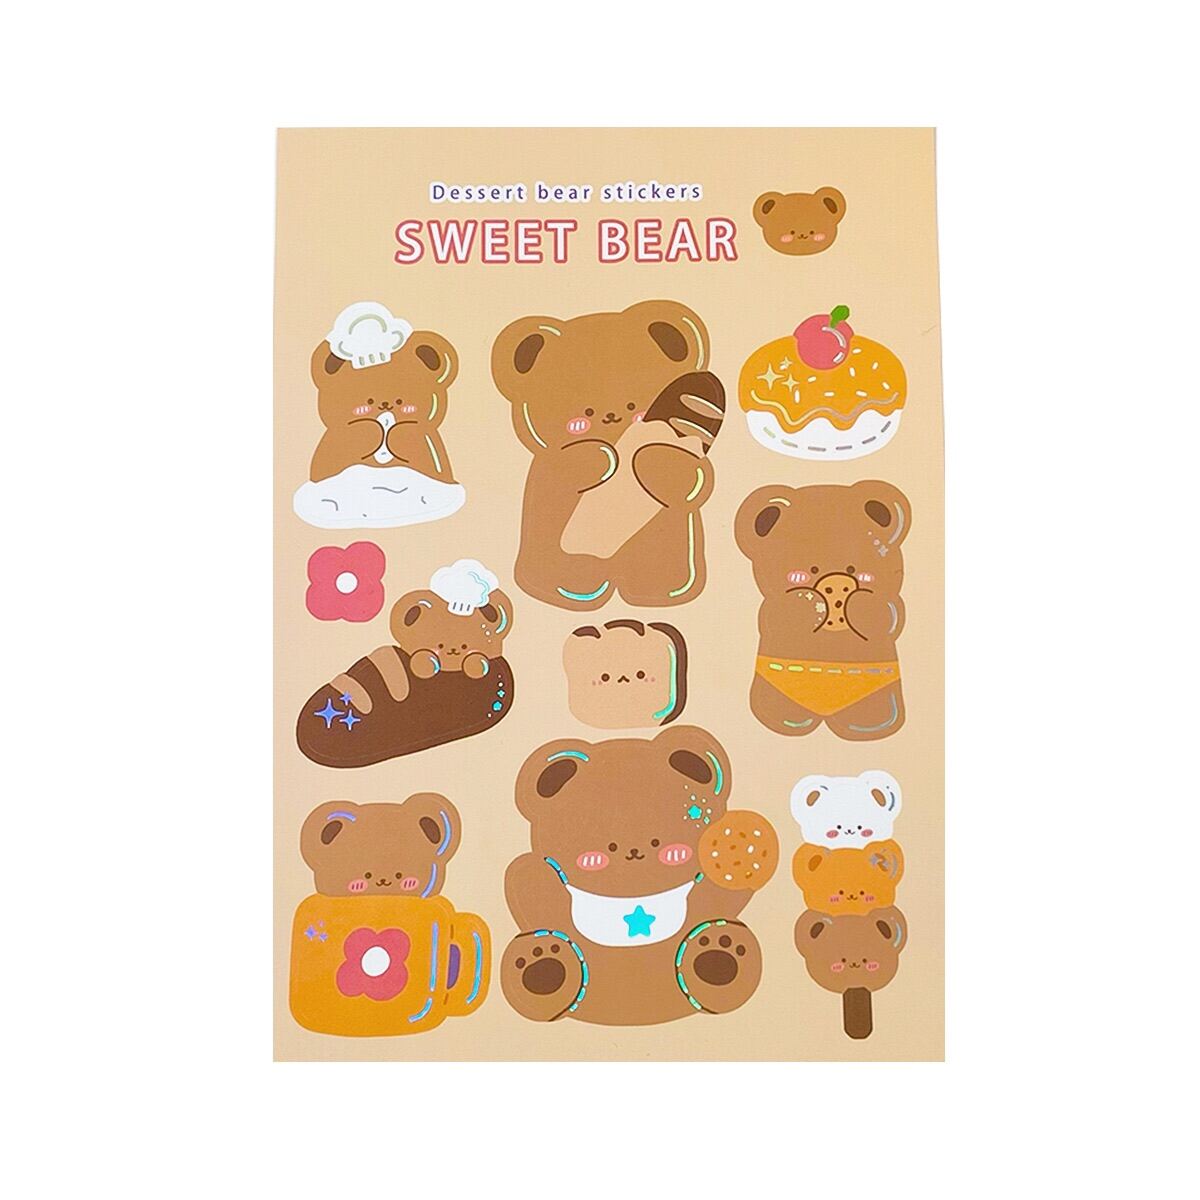 Bạn yêu thích gấu nâu? Hãy xem những sticker gấu nâu cực kỳ ngộ nghĩnh và đáng yêu trong bức tranh dưới đây. Chúng sẽ làm bạn cười và tạo cho bạn một ngày mới tràn đầy năng lượng.